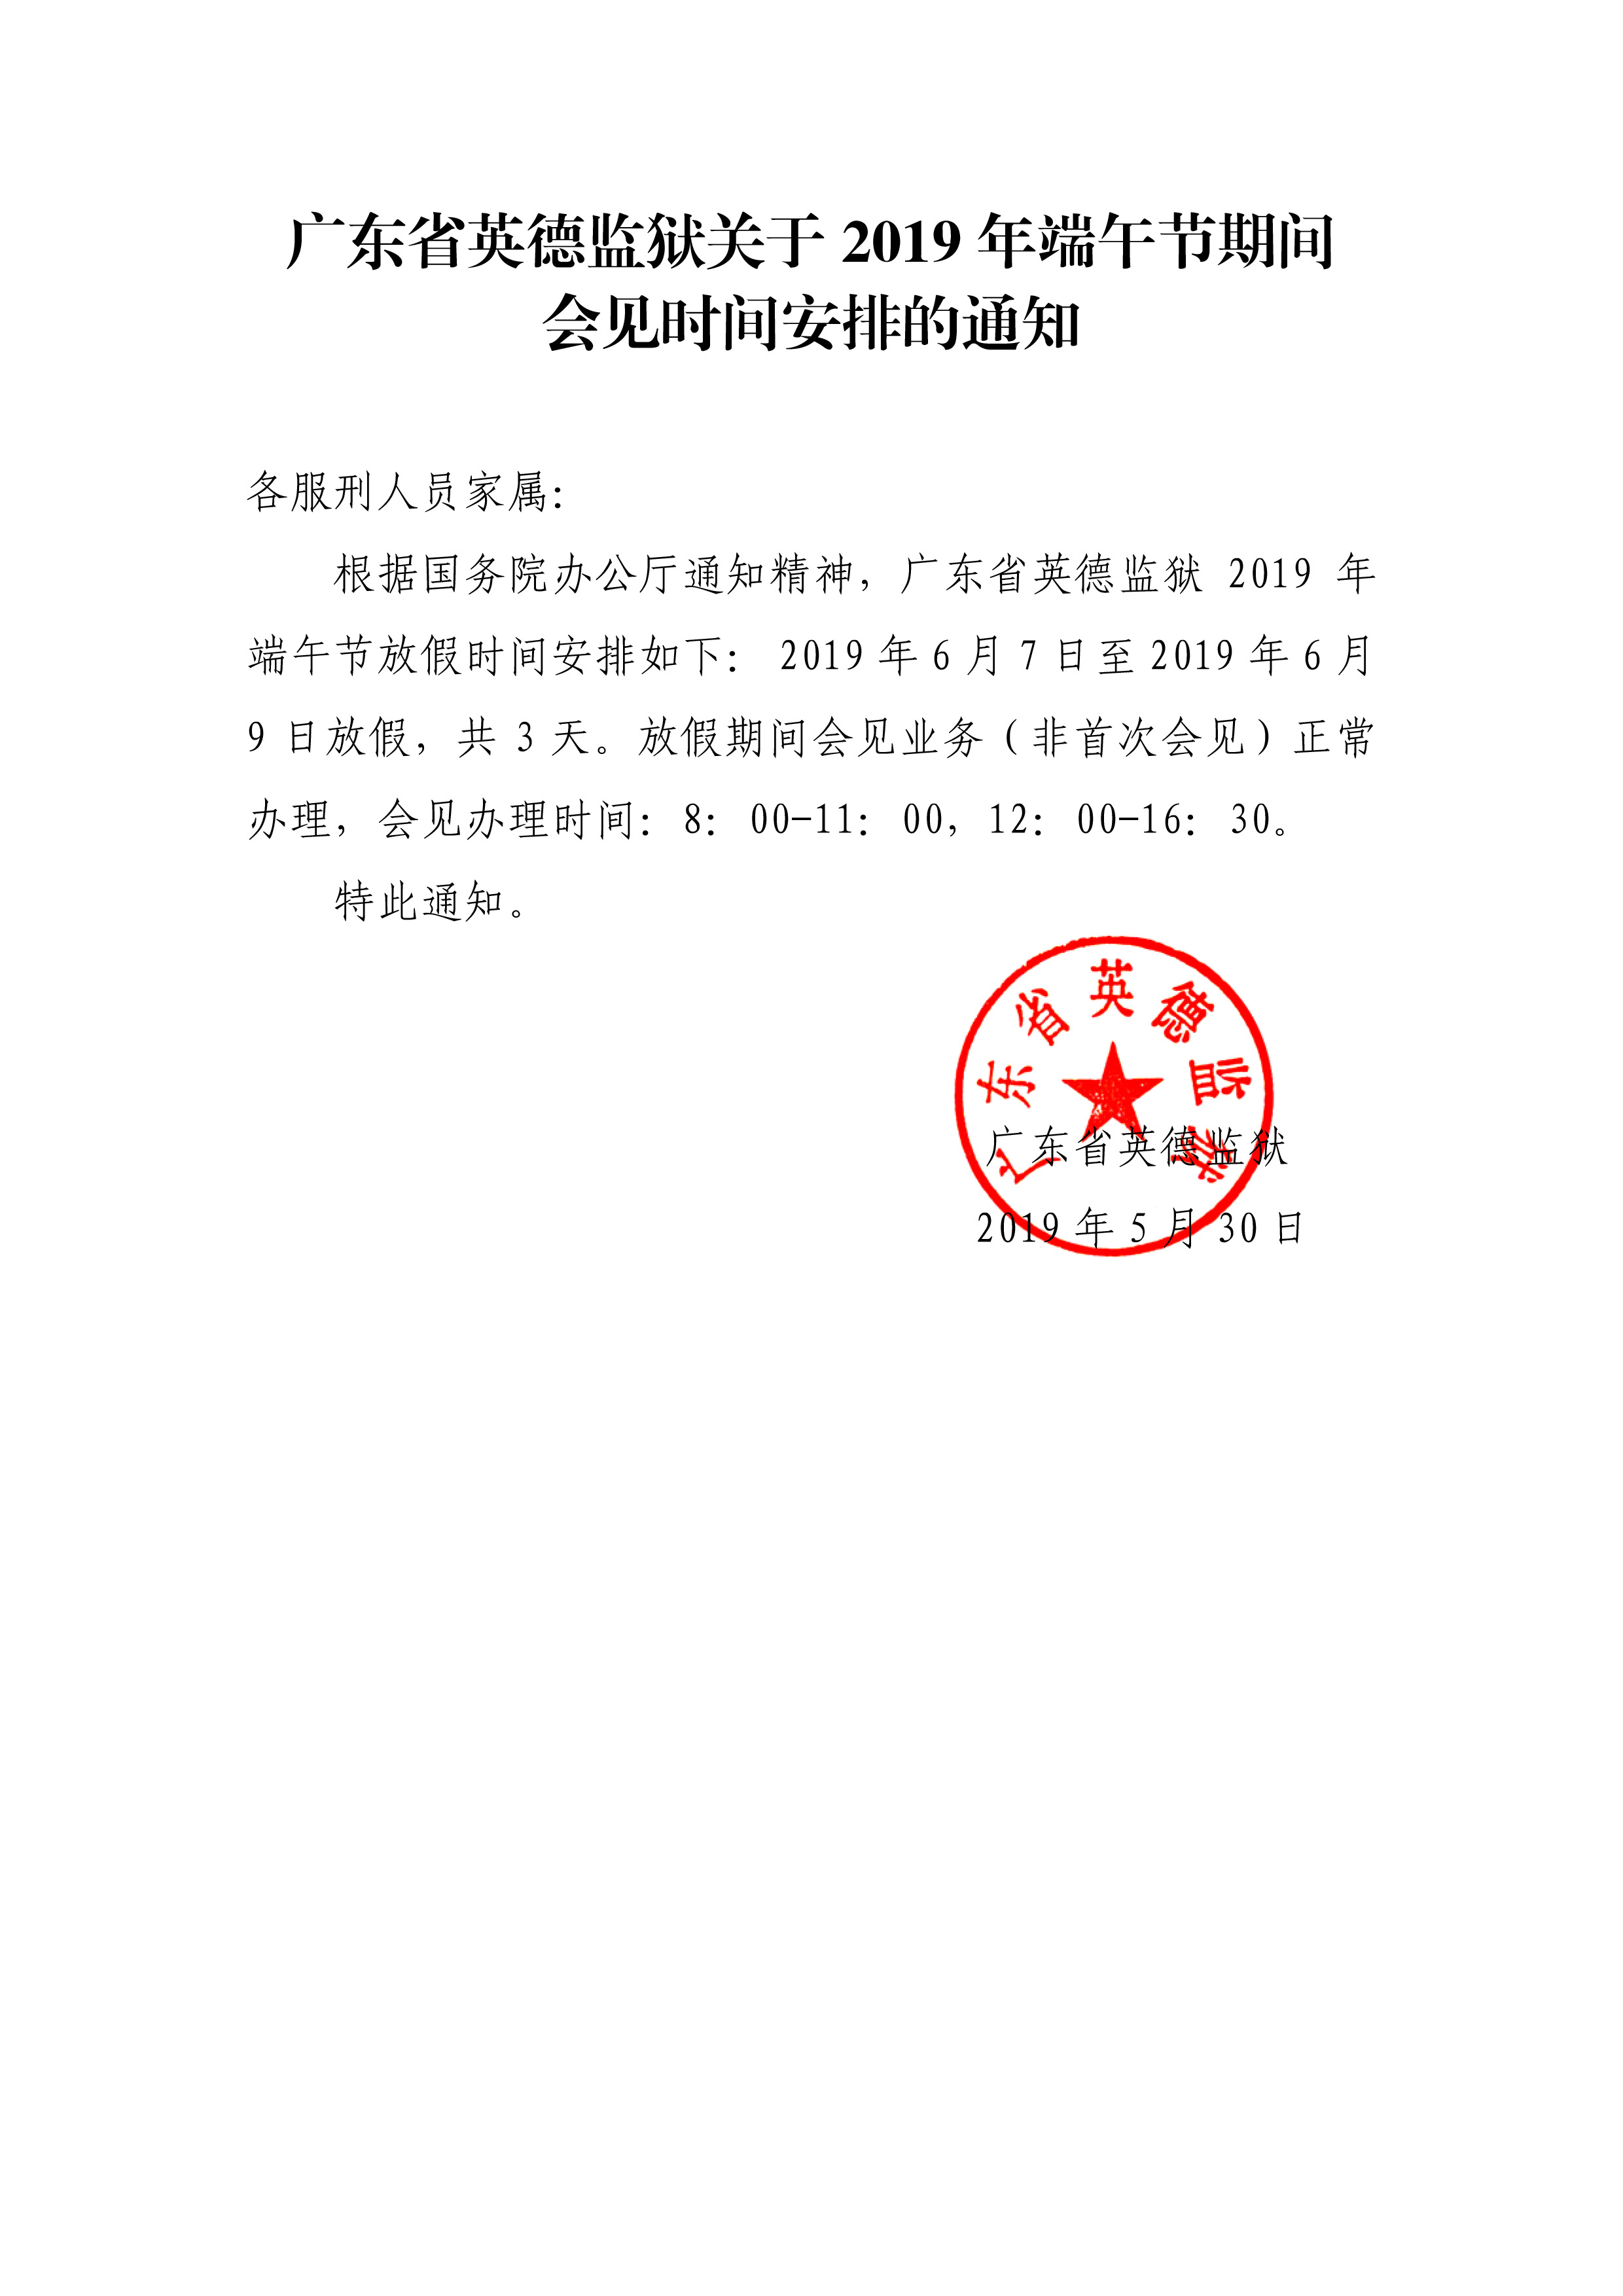 0530广东省英德监狱关于2019年端午节期间会见时间安排的通知.jpg